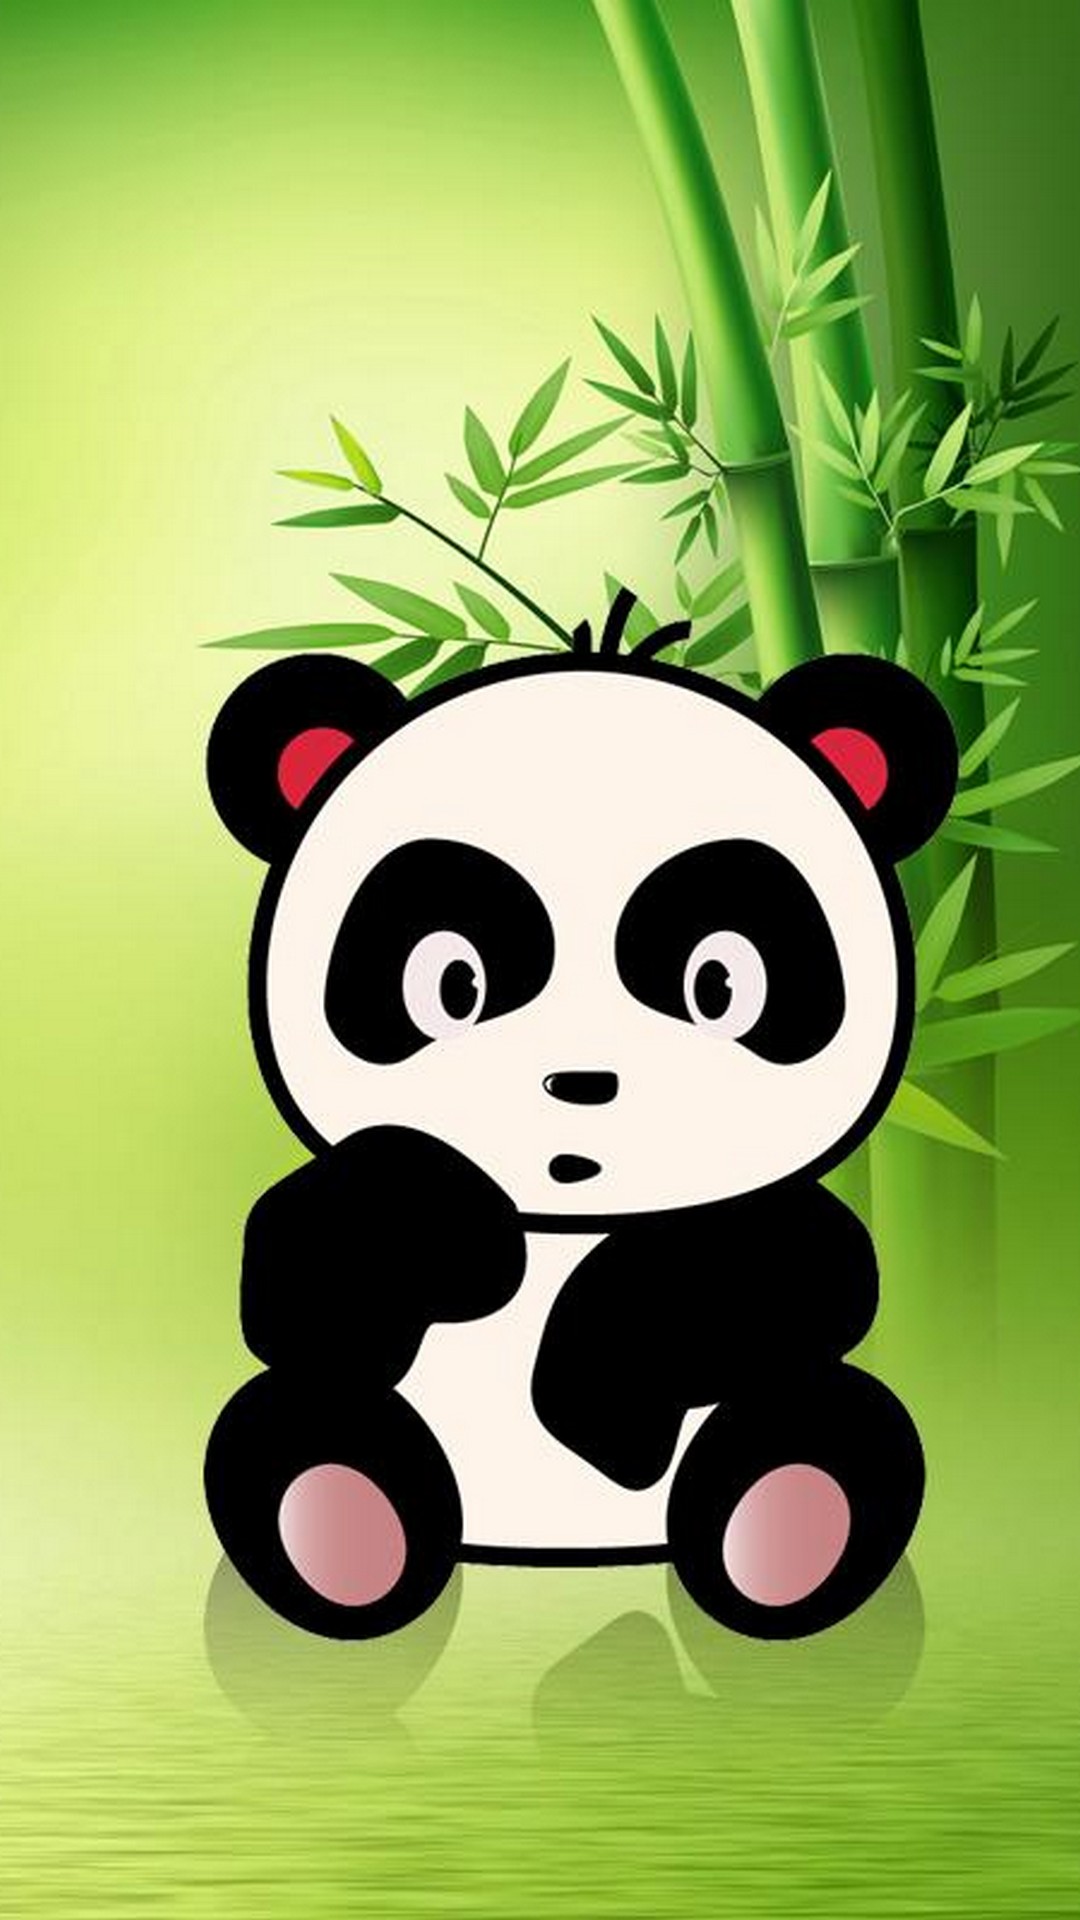 Cute Panda Cartoon Wallpaper Wallpapers